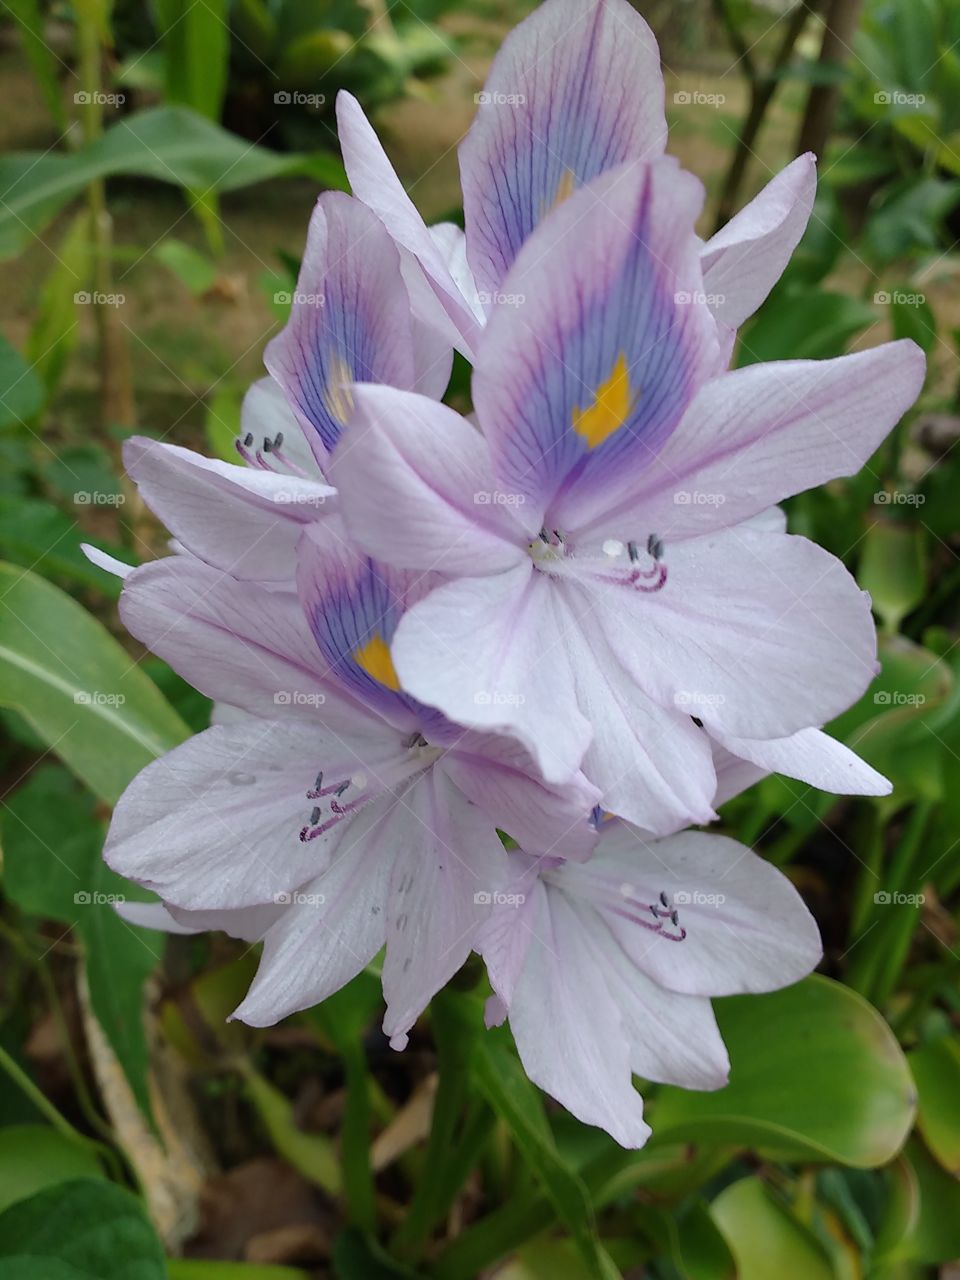 Water hyacinthus flowers